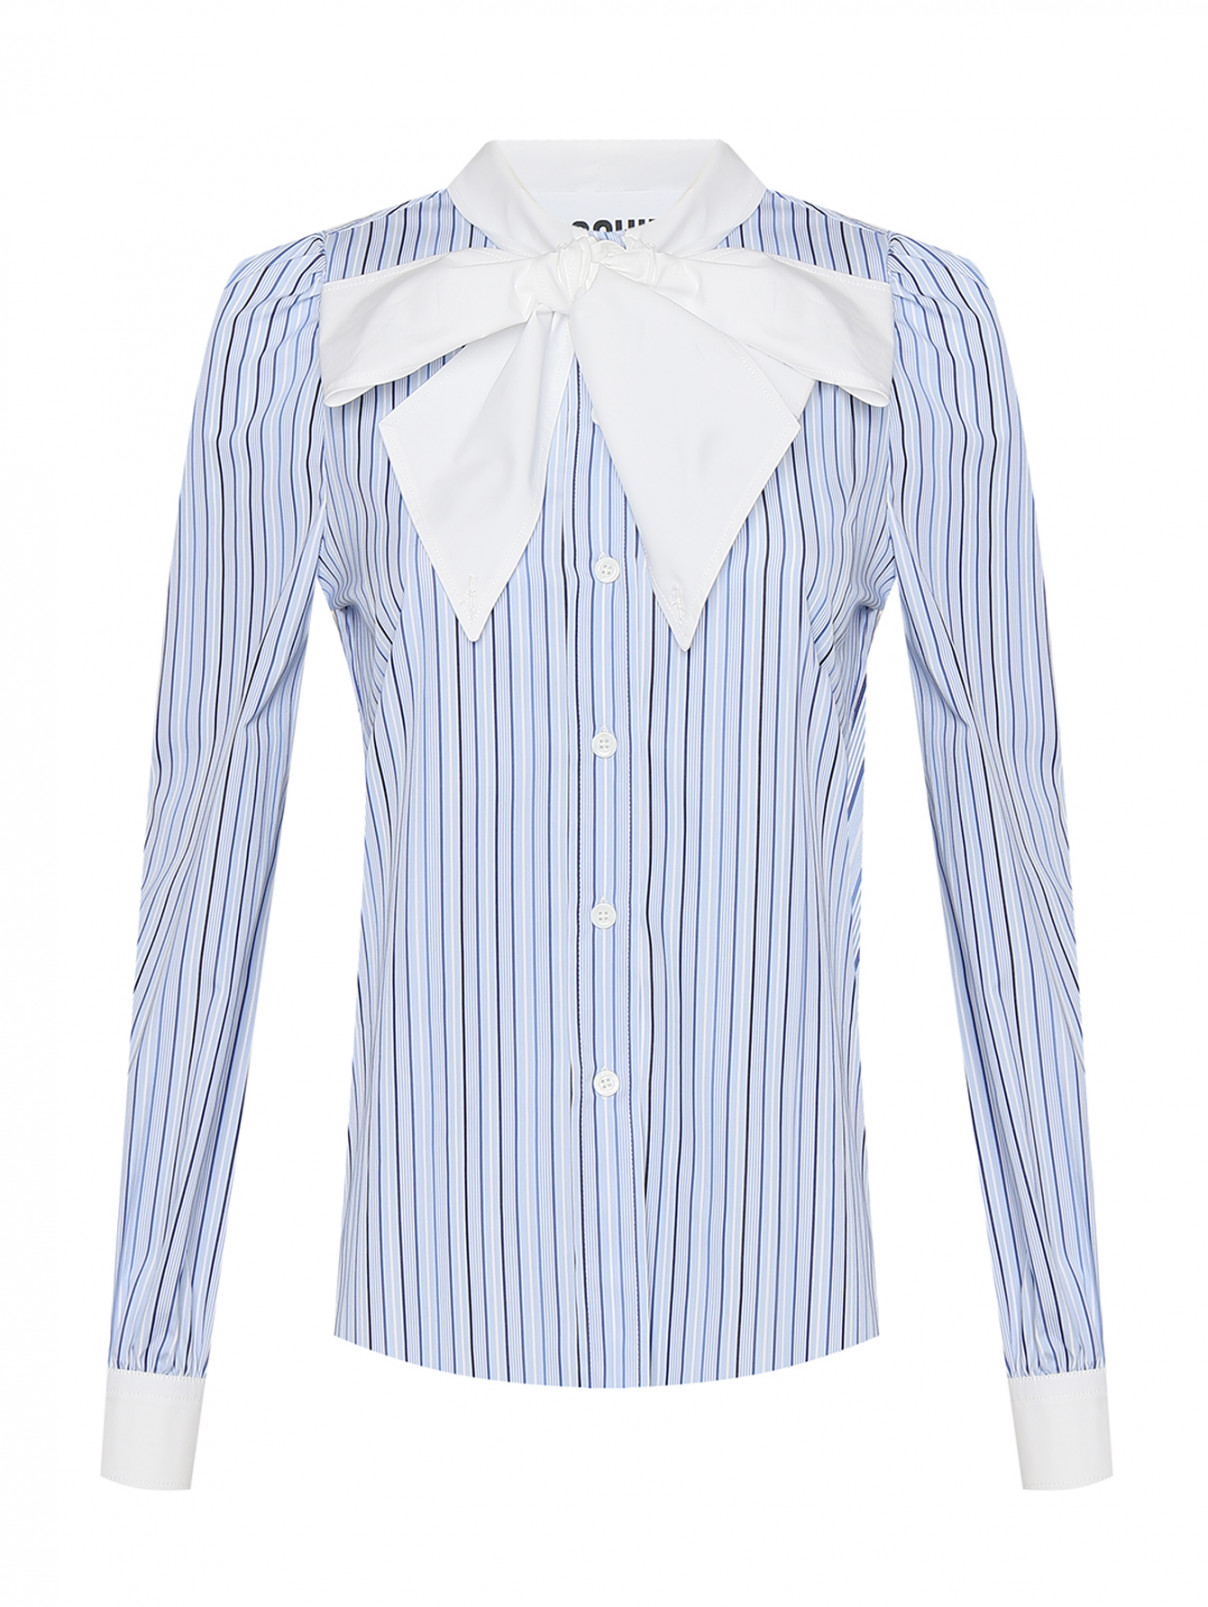 Блуза из хлопка с узором полоска Moschino  –  Общий вид  – Цвет:  Синий